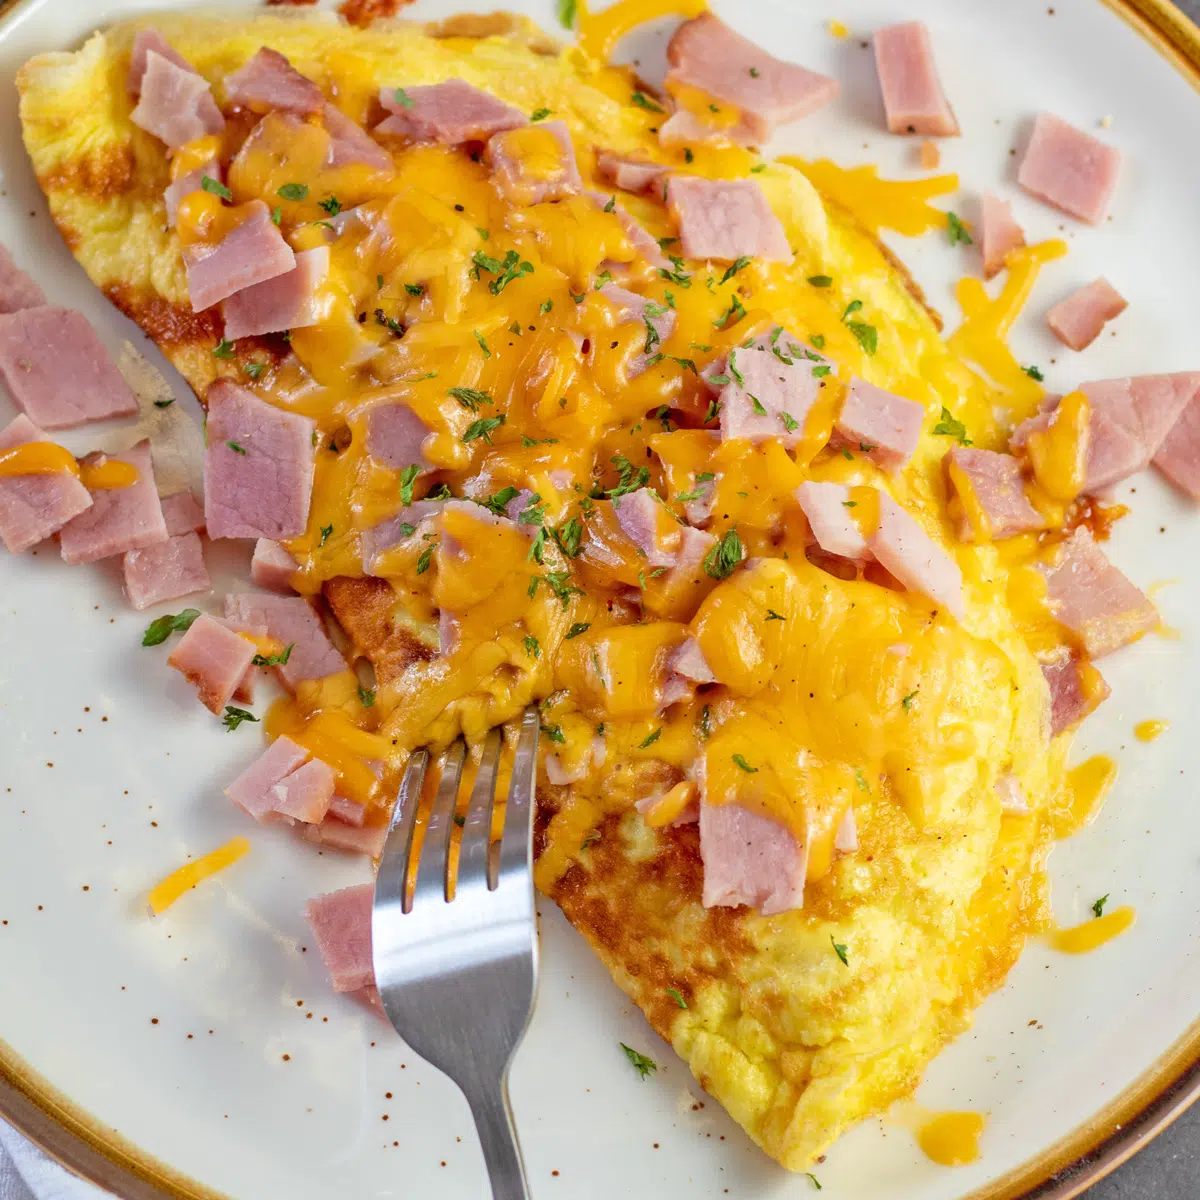 Smakelijke ham en kaasomelet op tan plaat met lichtbruine rand en vorktanden dichtbij de omelet.